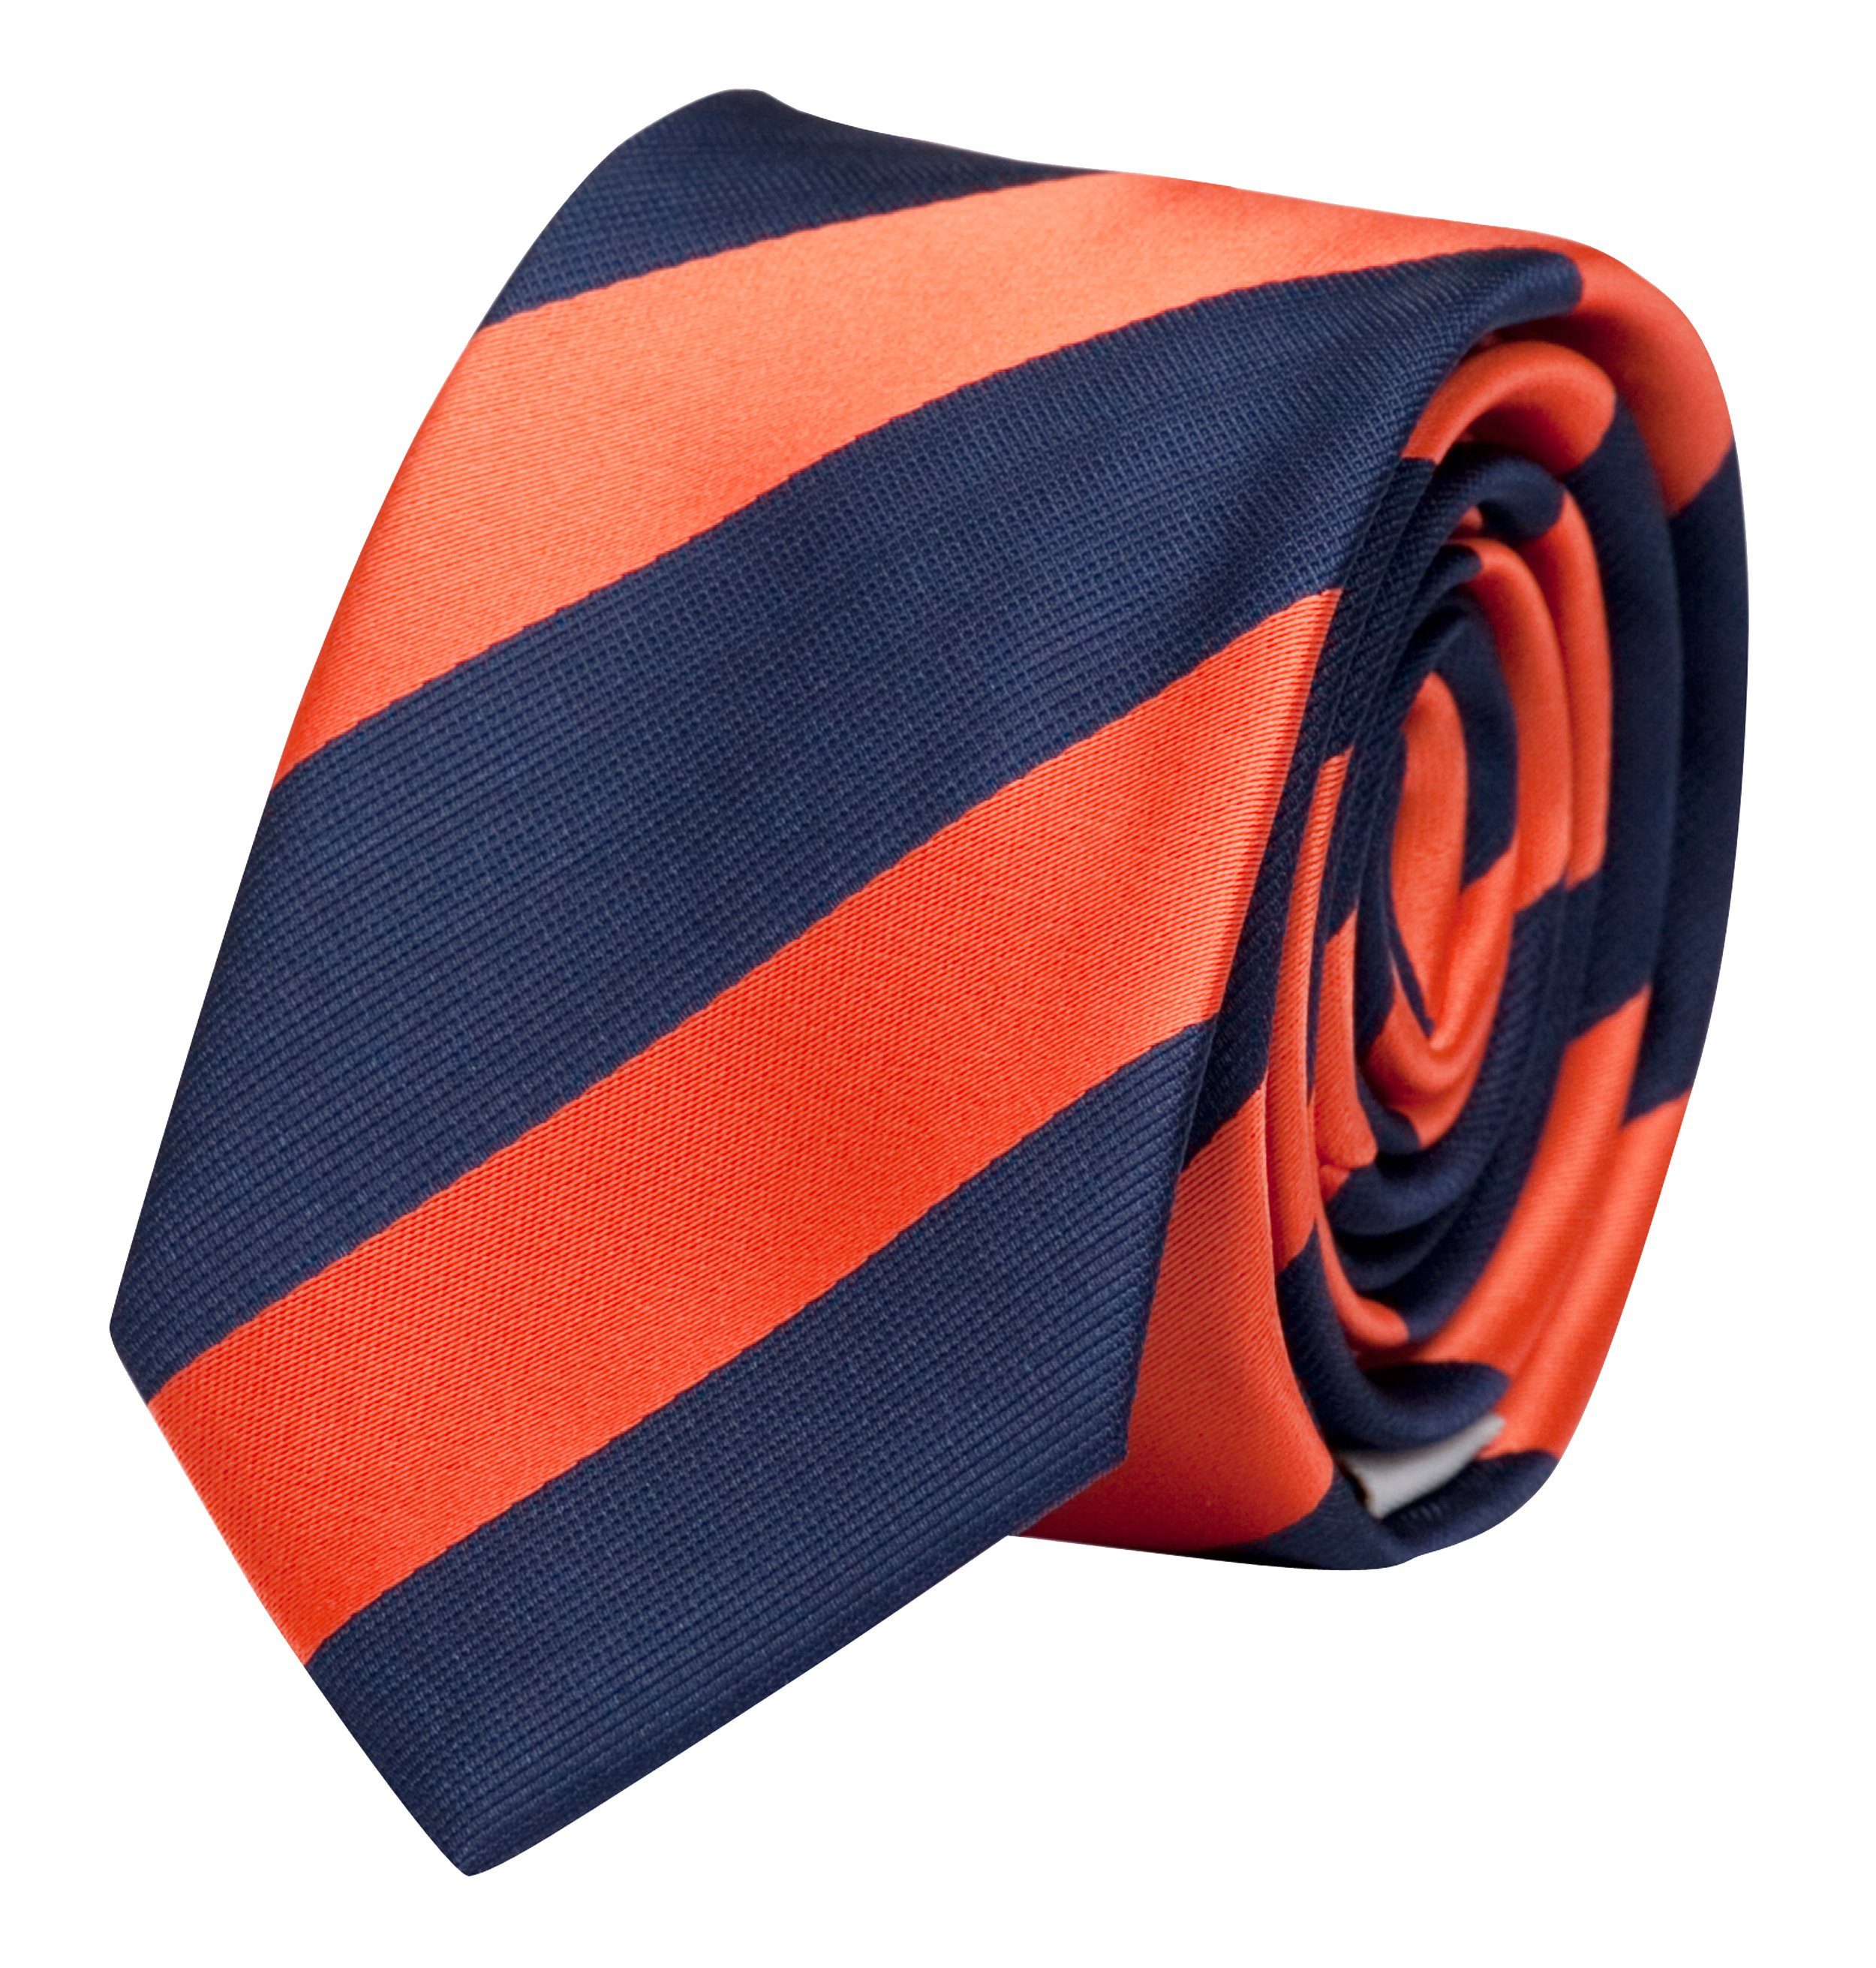 Fabio Farini Krawatte Herren Orange Box, Blue/Salmon 6cm Schlips (6cm), Very Schmal verschiedene Dunkelblau Blaue Krawatte - Blautöne - Männer (ohne Gestreift) in